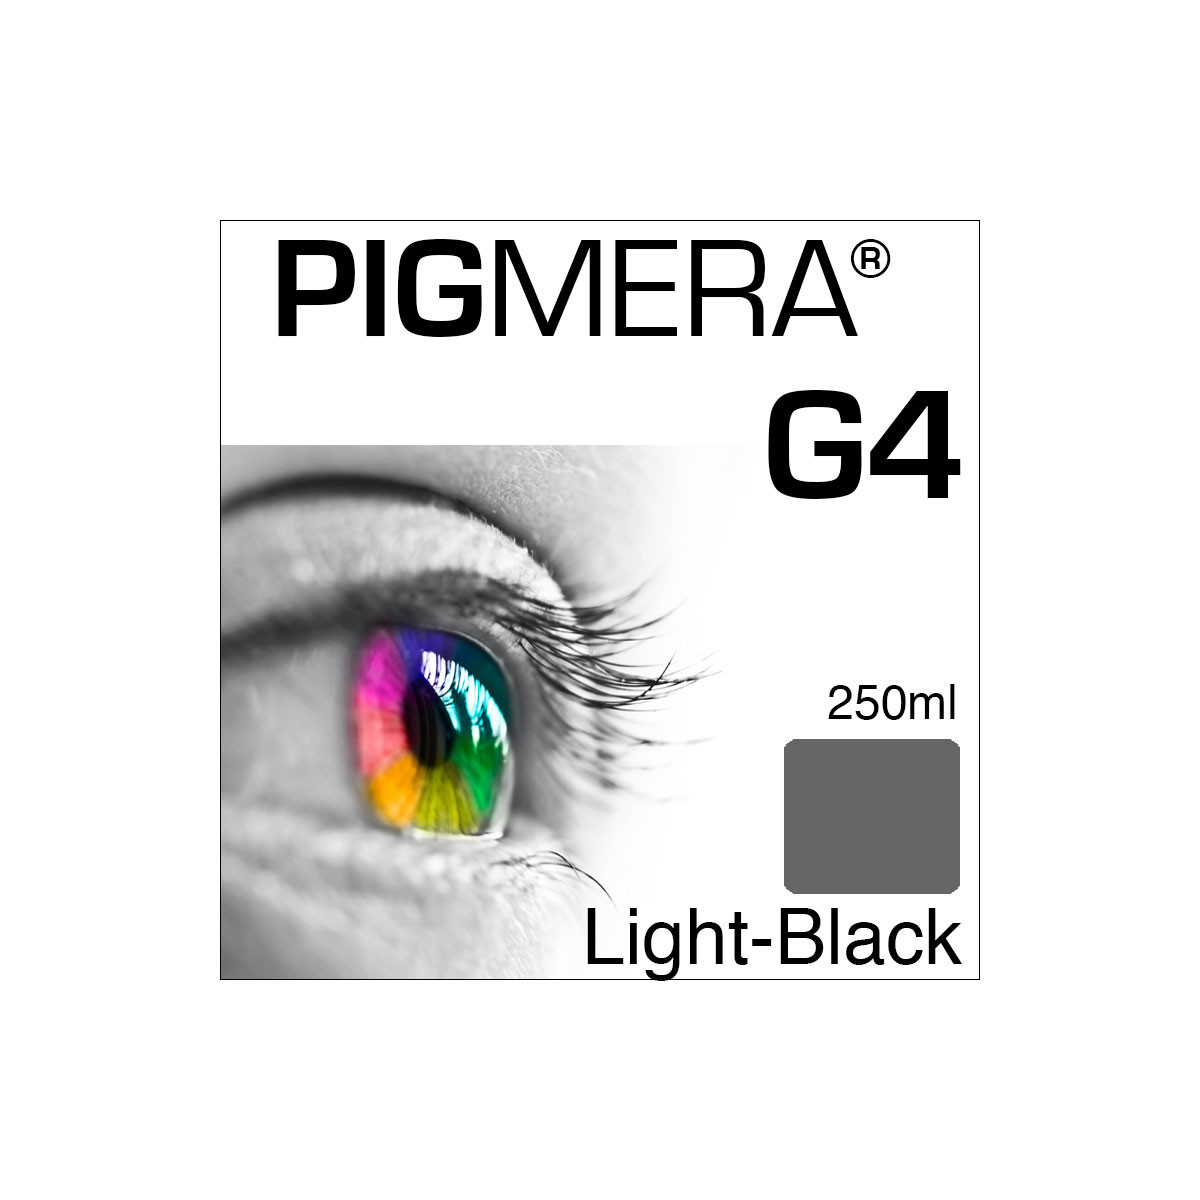 farbenwerk Pigmera G4 Flasche Light-Black 250ml